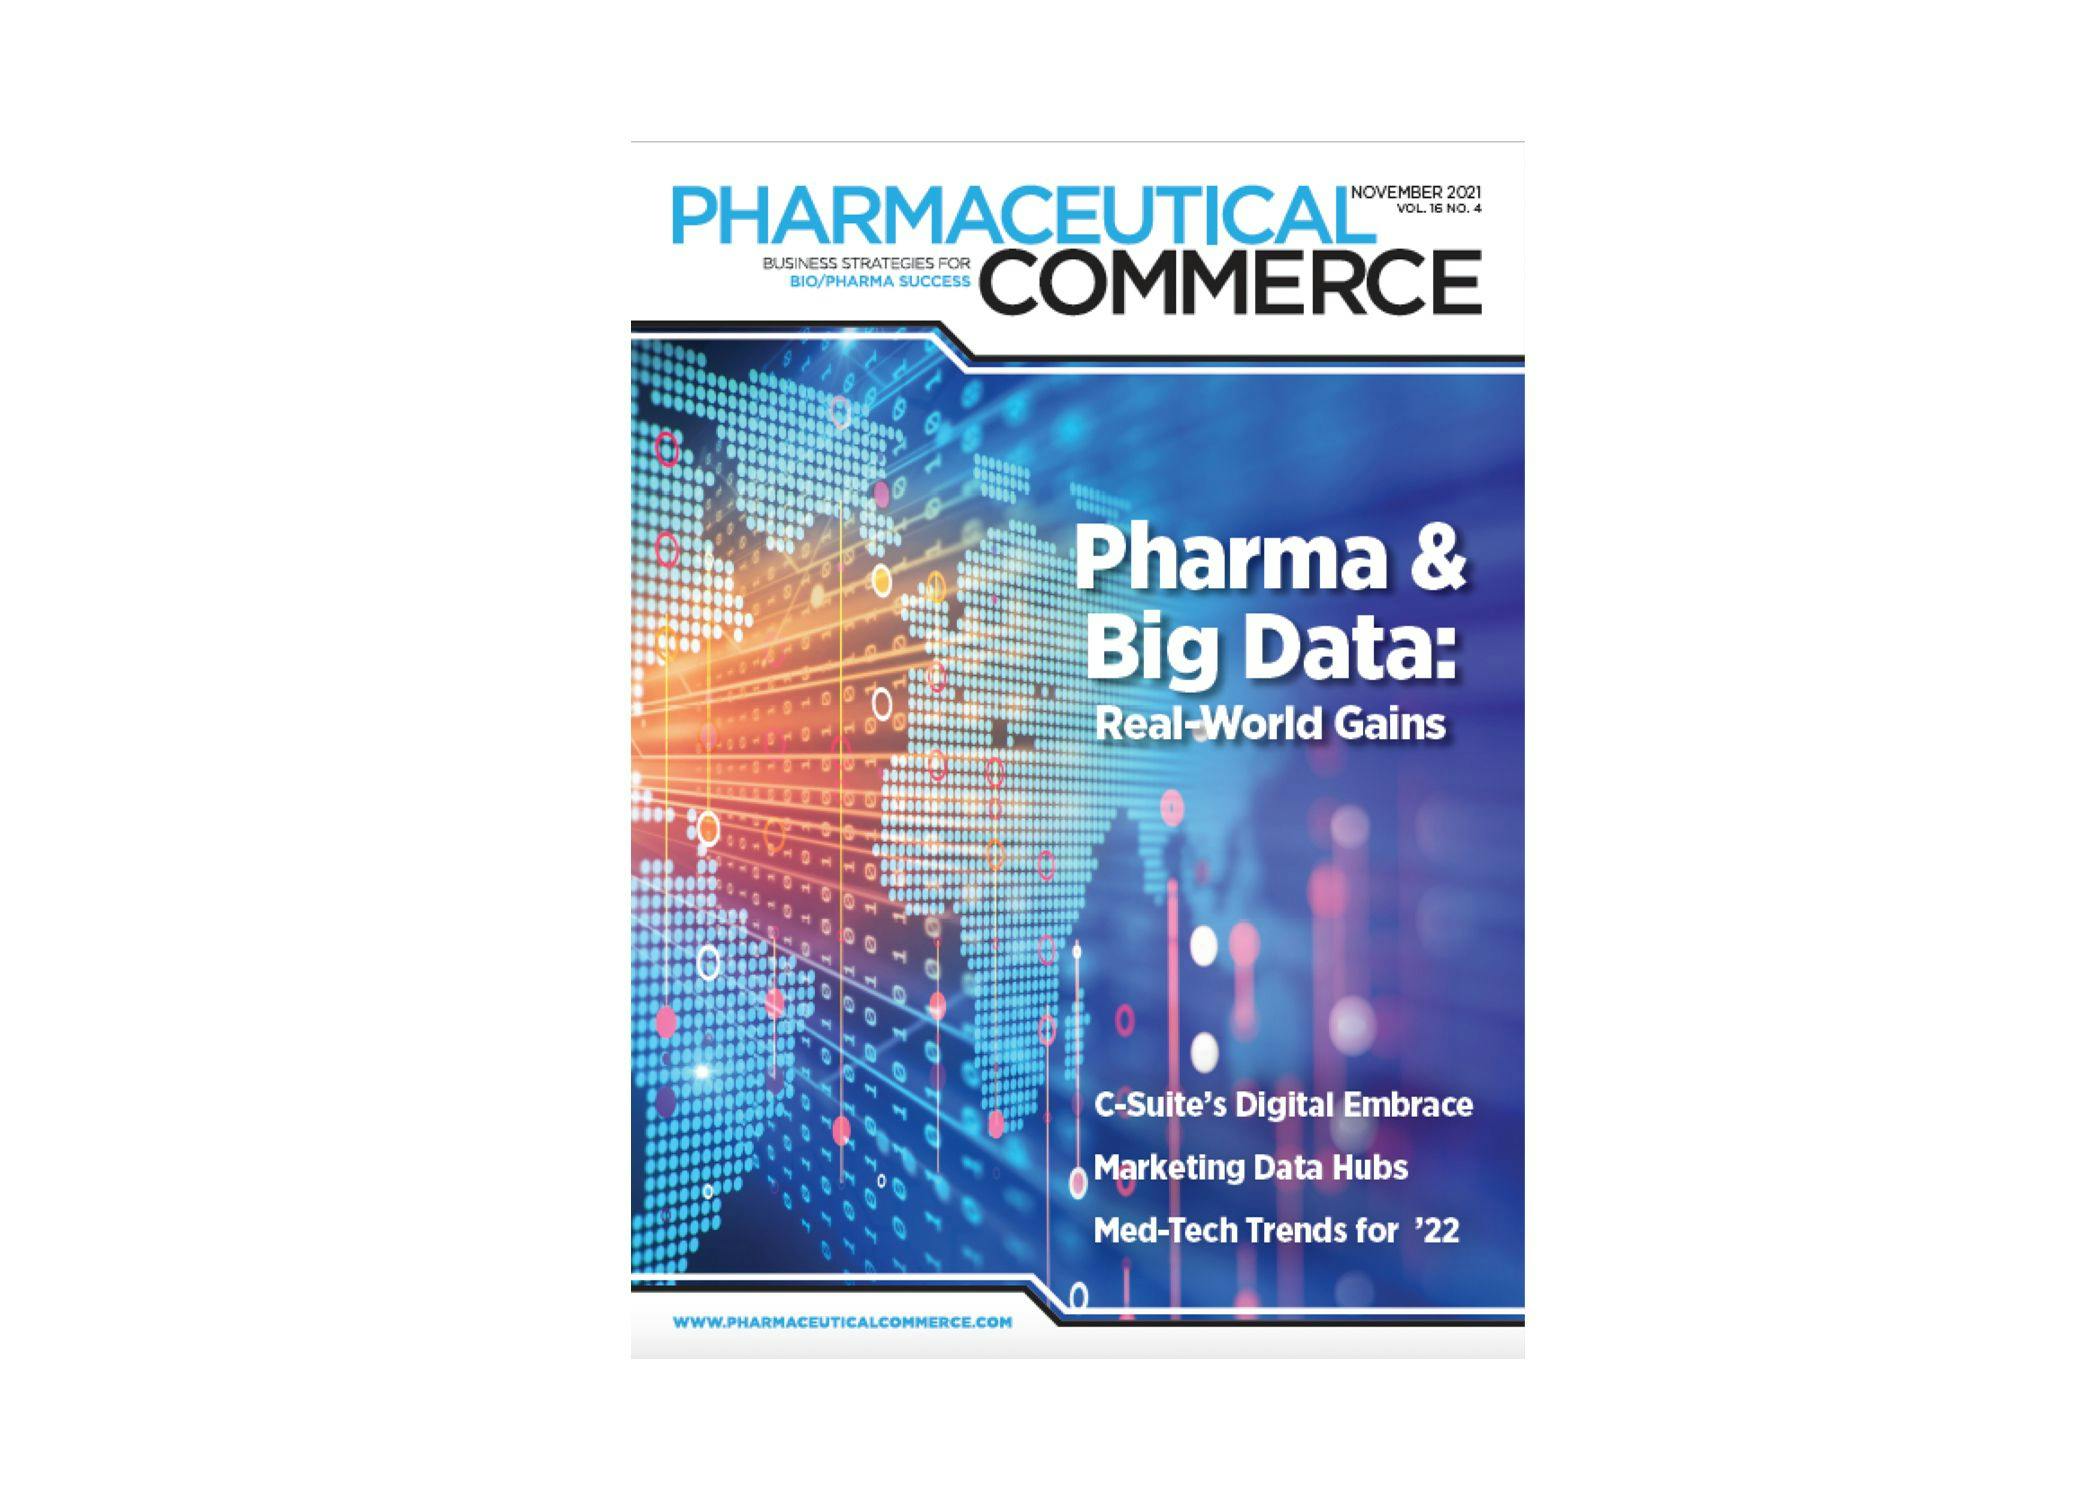 Pharmaceutical Commerce - November 2021 Issue (PDF)